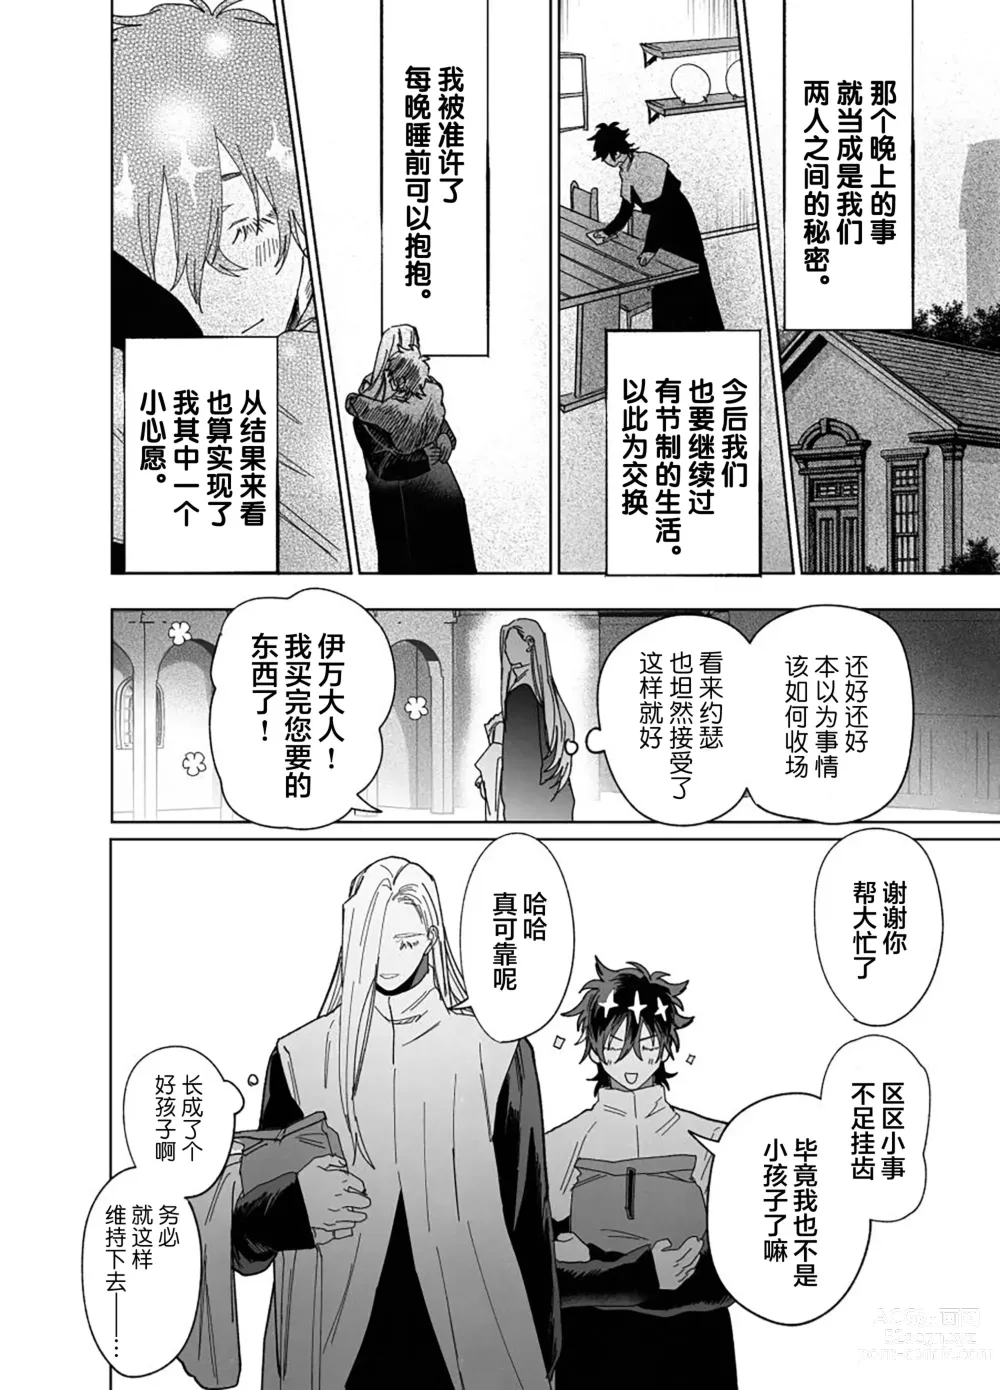 Page 49 of doujinshi Bokushi Kanraku - the pastor surrenders.